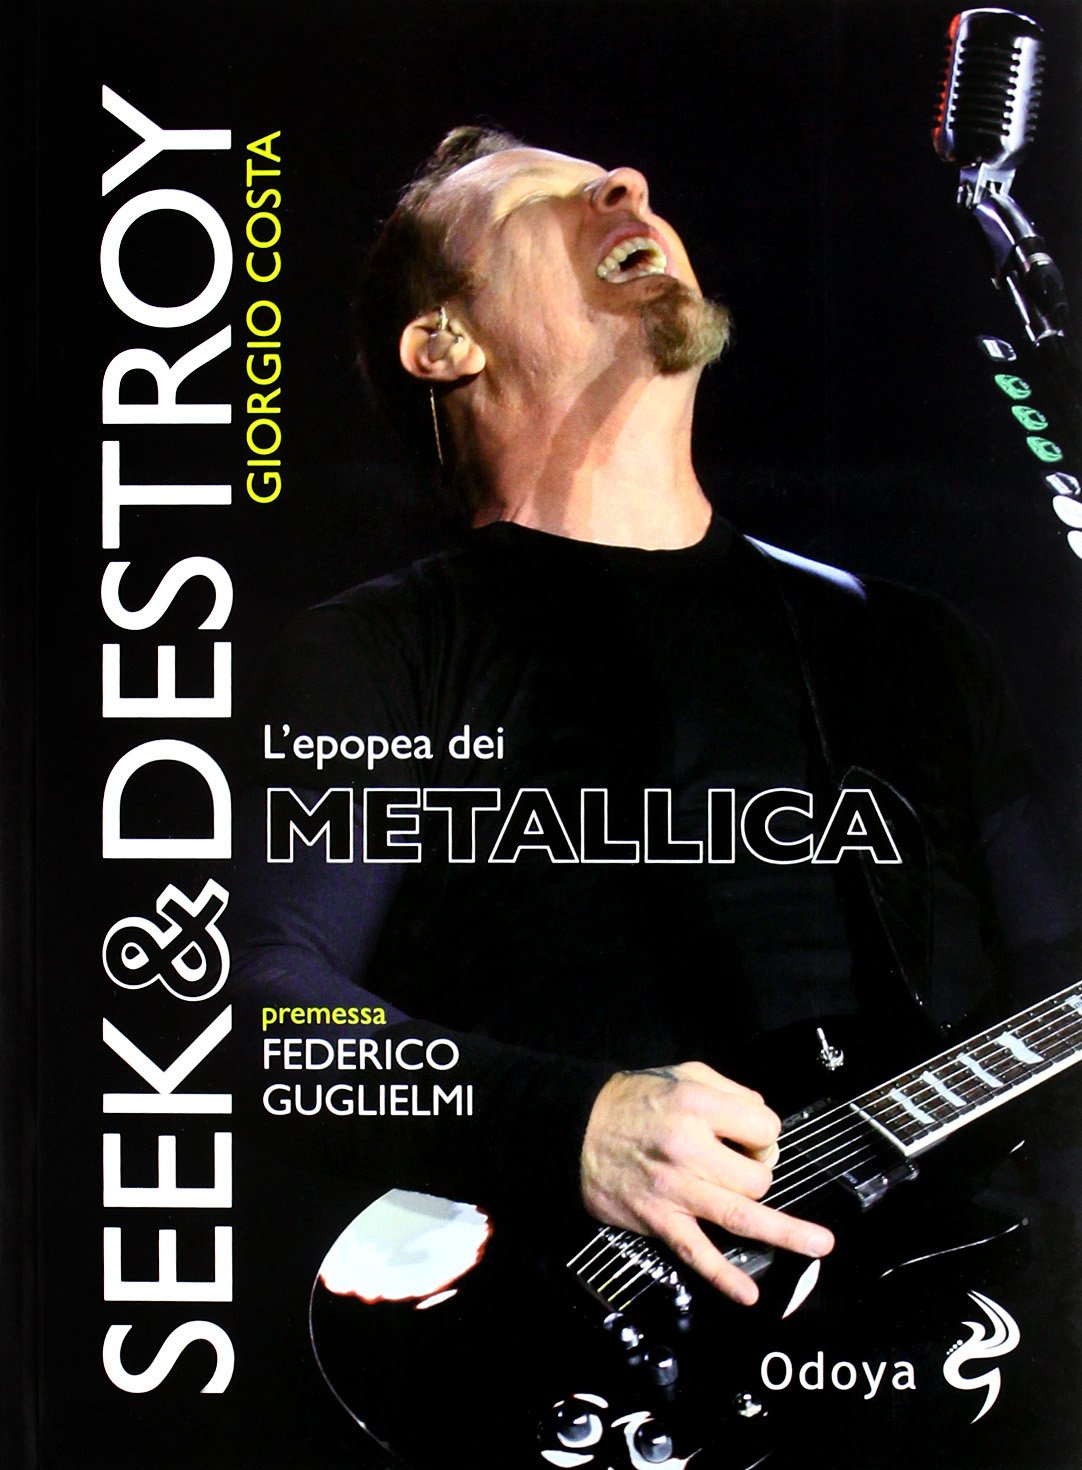 Libri Giorgio Costa - Seek & Destroy. L'epopea Dei Metallica NUOVO SIGILLATO, EDIZIONE DEL 25/10/2012 SUBITO DISPONIBILE